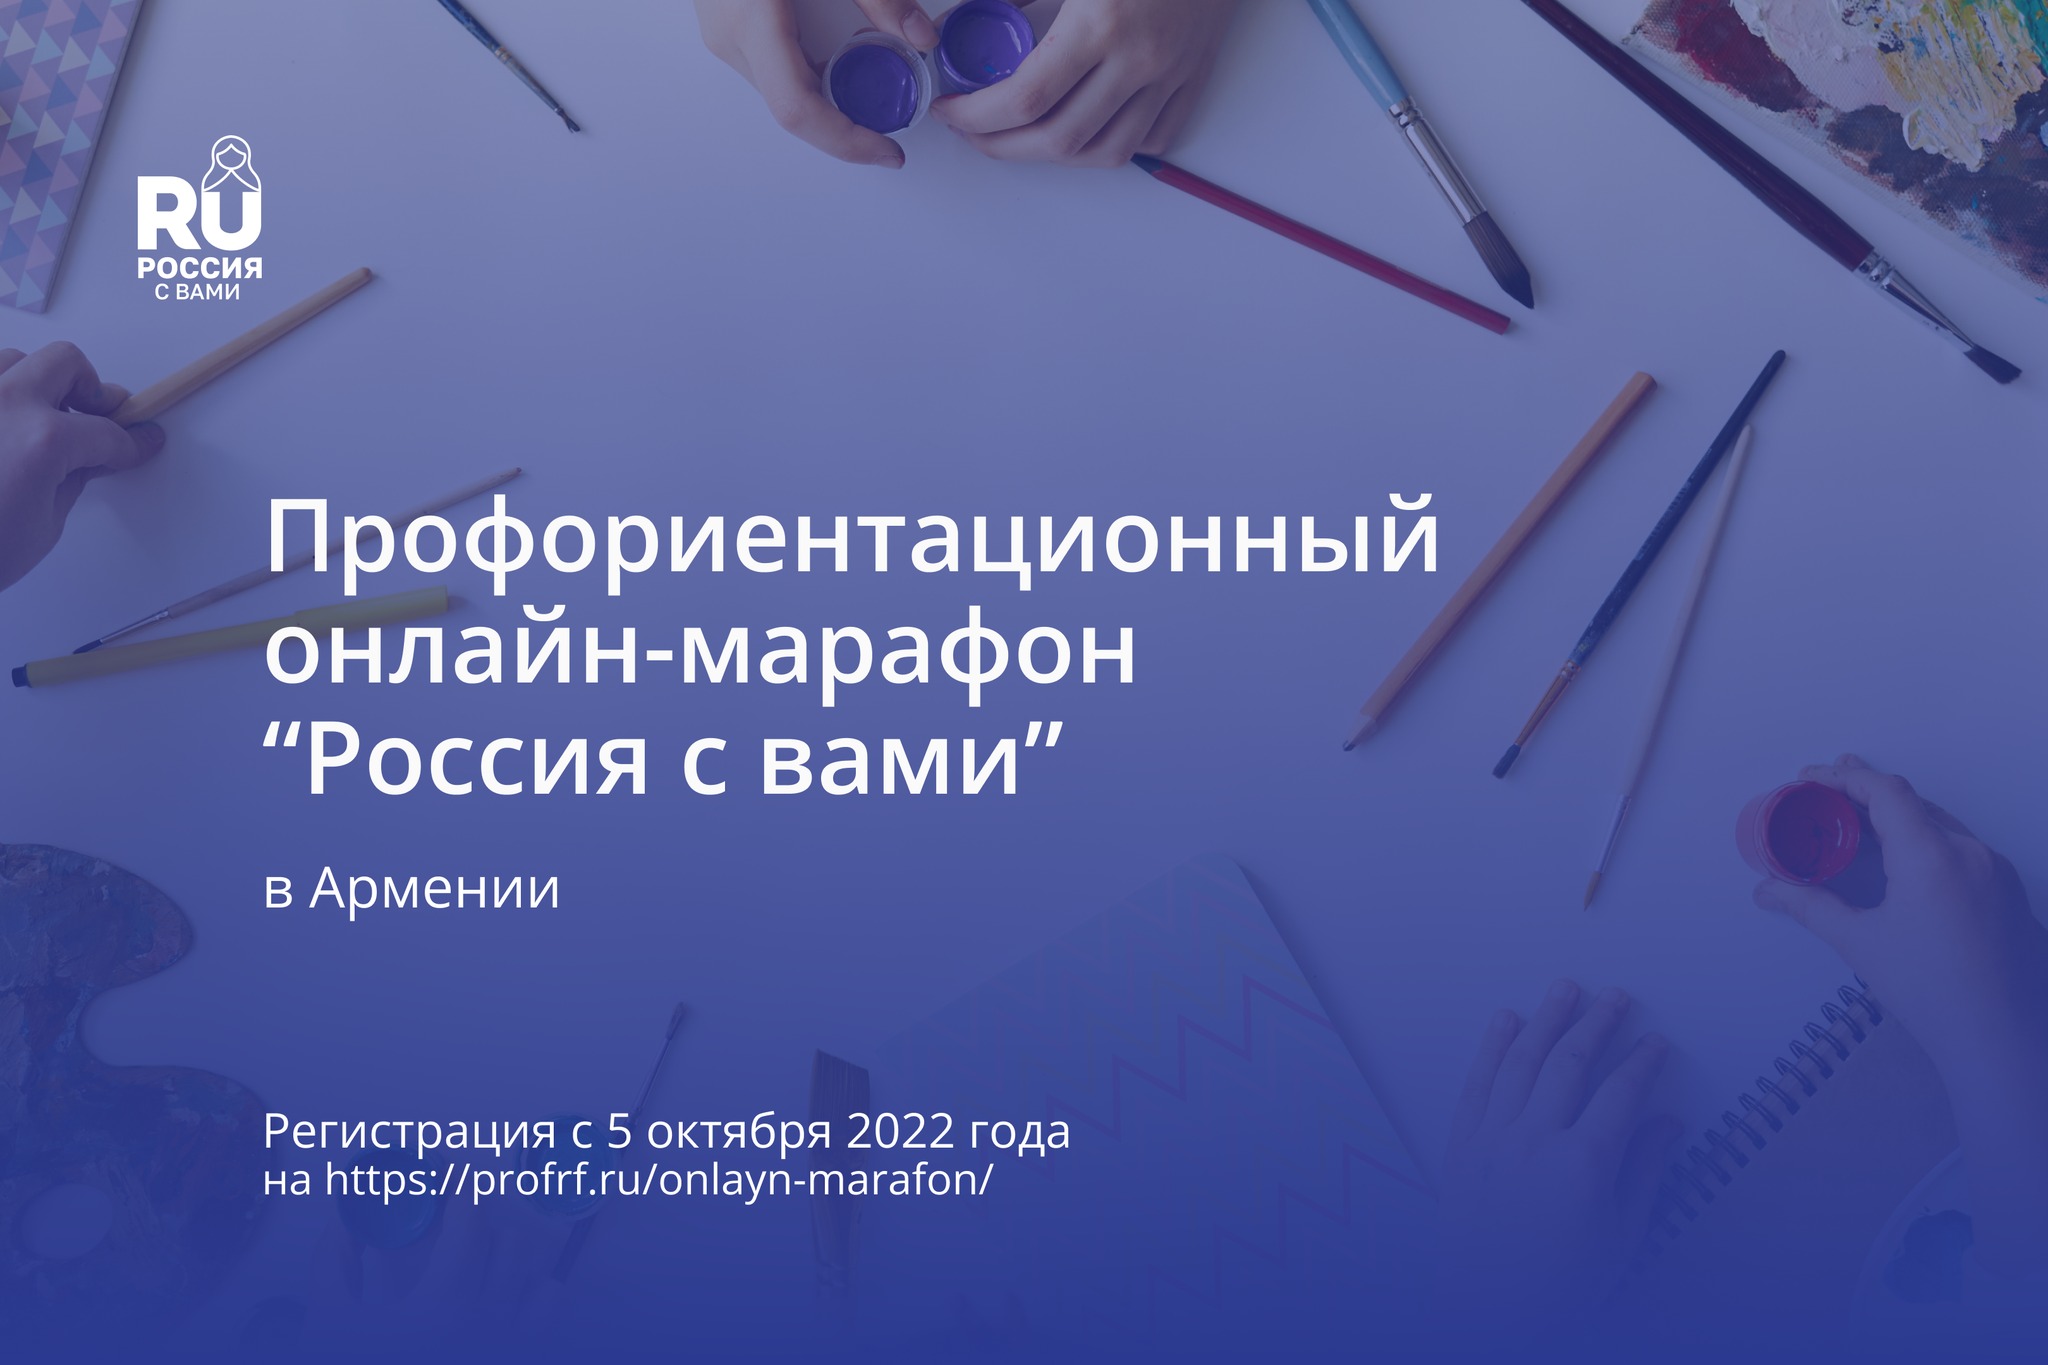 В Армении стартует профориентационный онлайн-марафон “Россия с вами” 